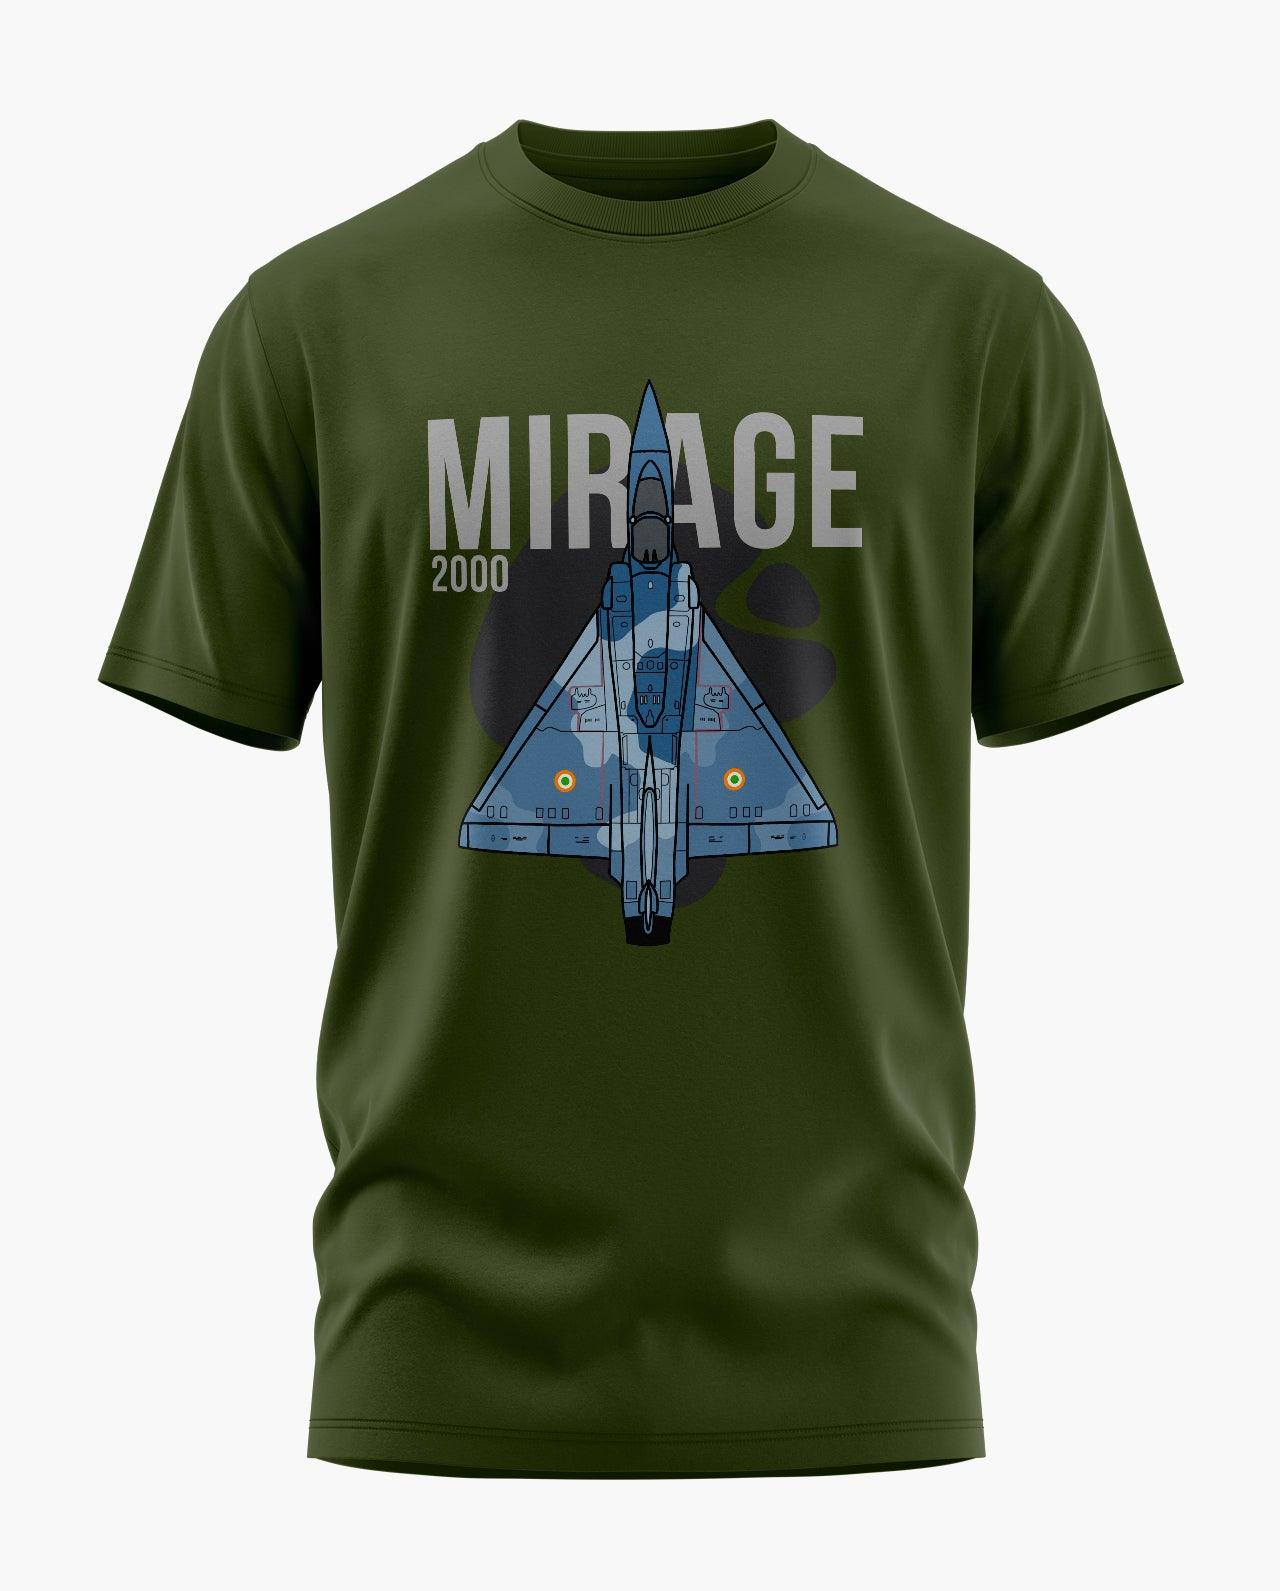 Mirage 2000 T-Shirt - Aero Armour